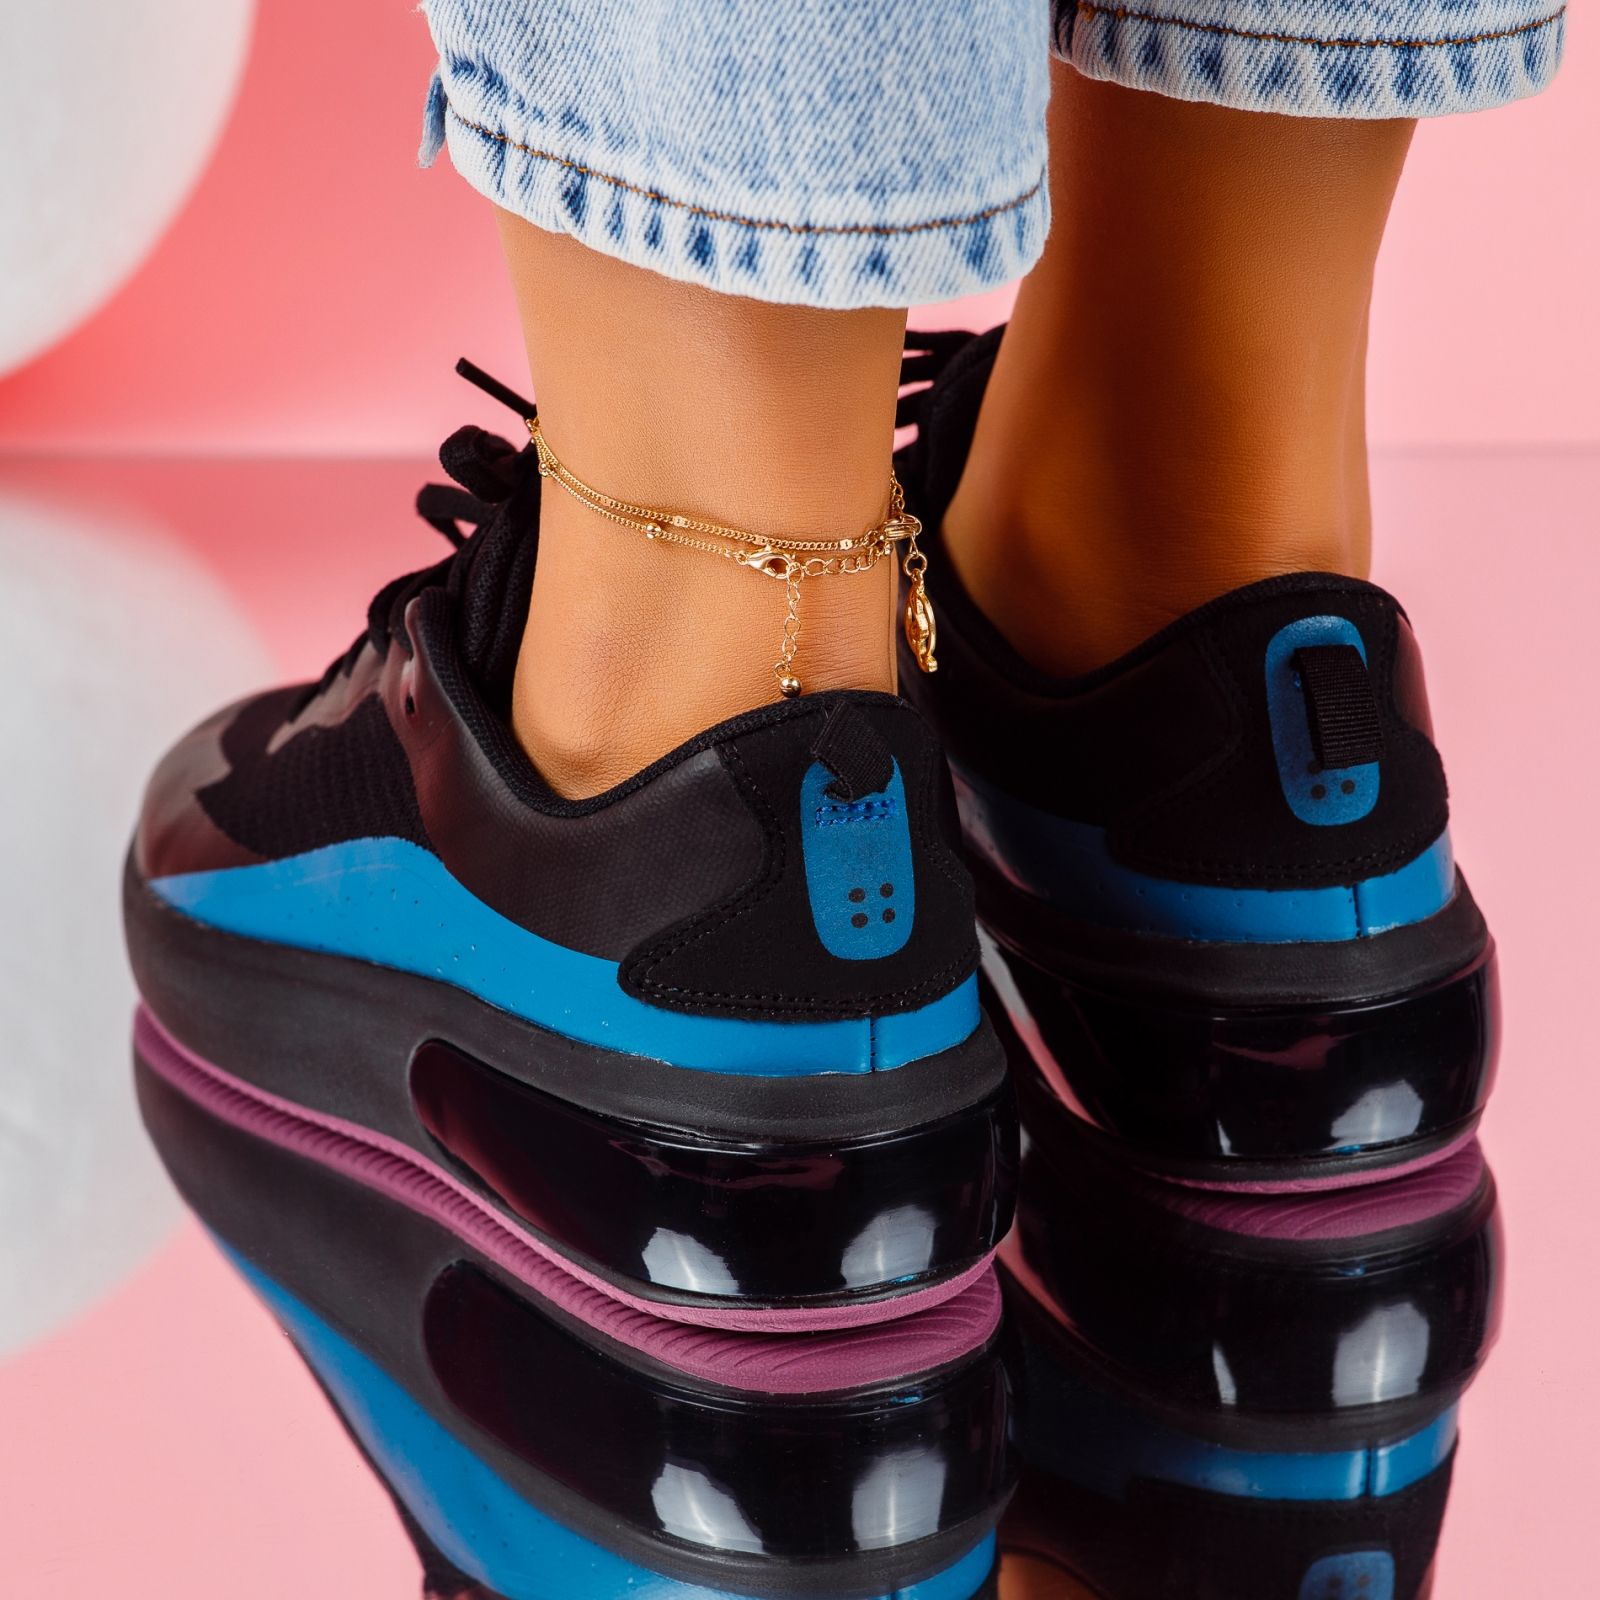 Дамски спортни обувки Elise2 черен #5195M